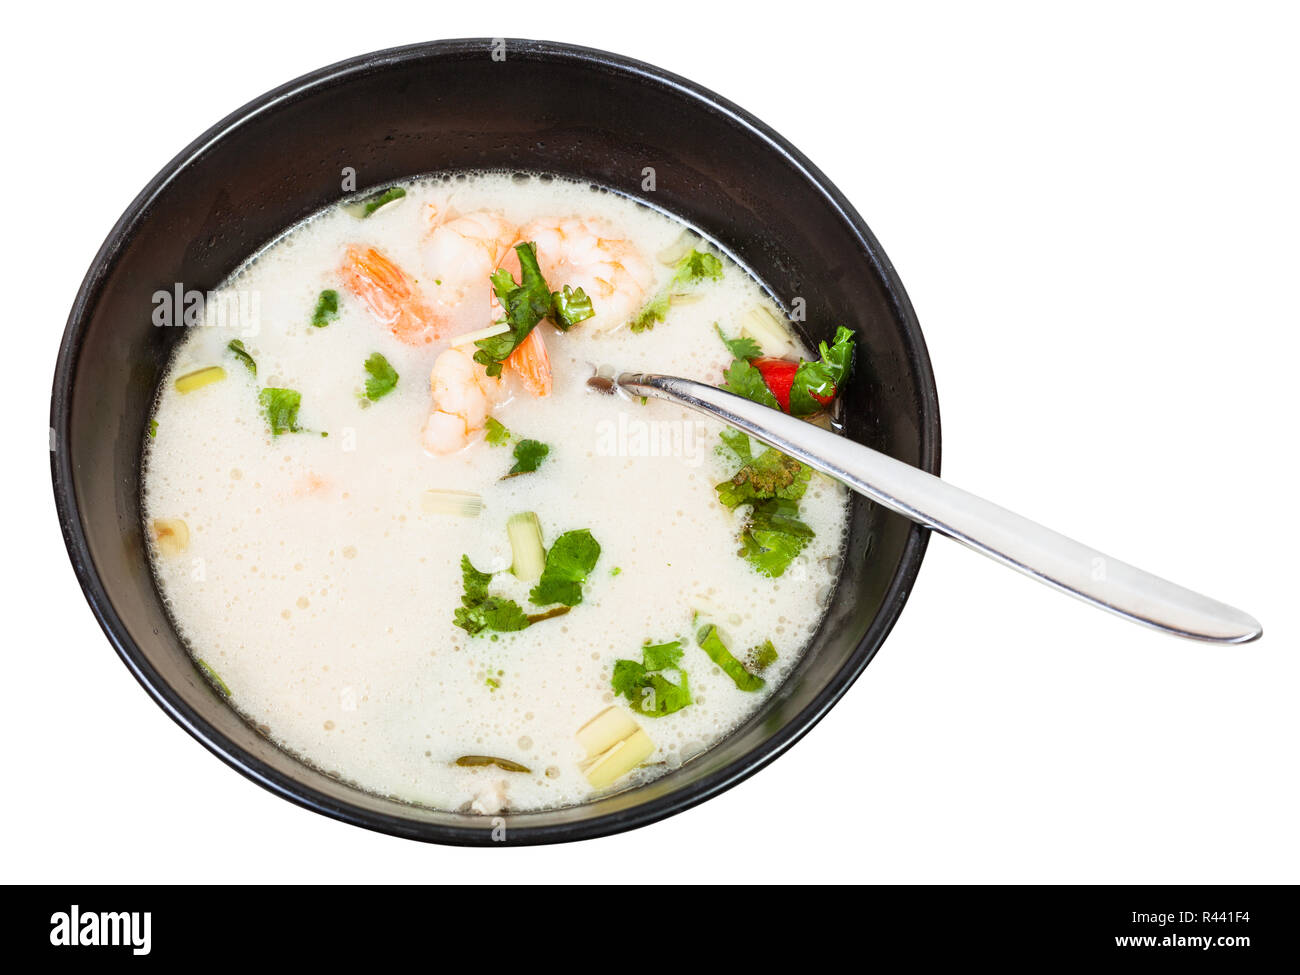 Oben Ansicht von sauer-scharfe Suppe Tom Yam in der Schüssel Stockfoto